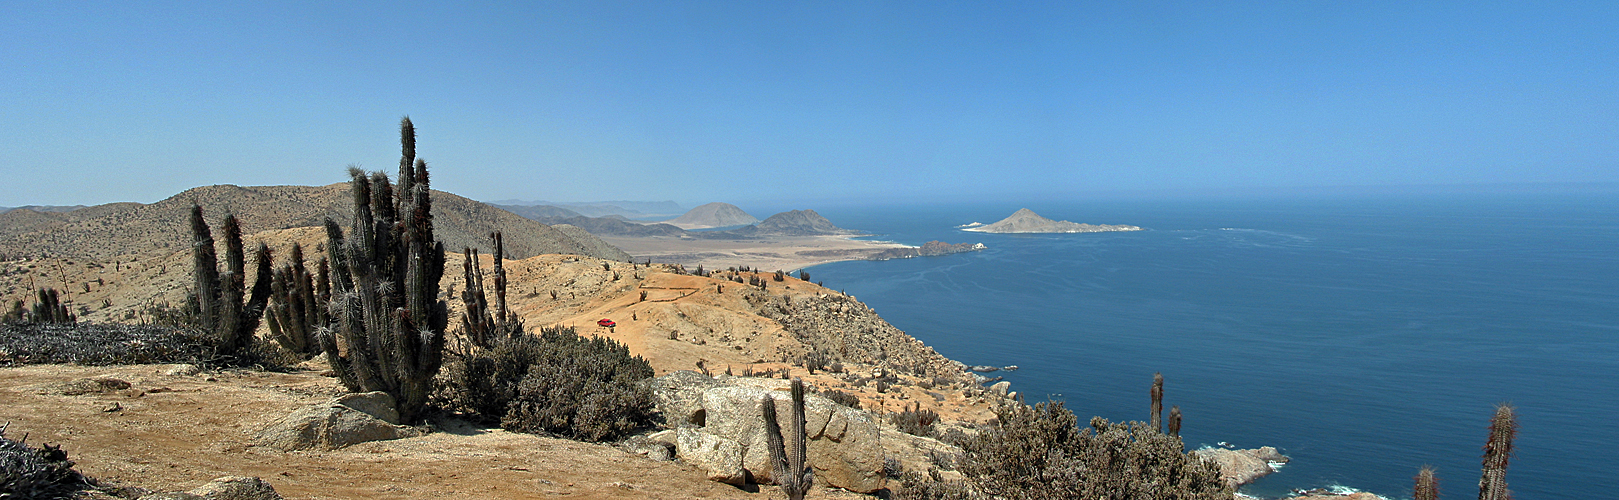 Photo panoramique du parc national Pan de Azucar